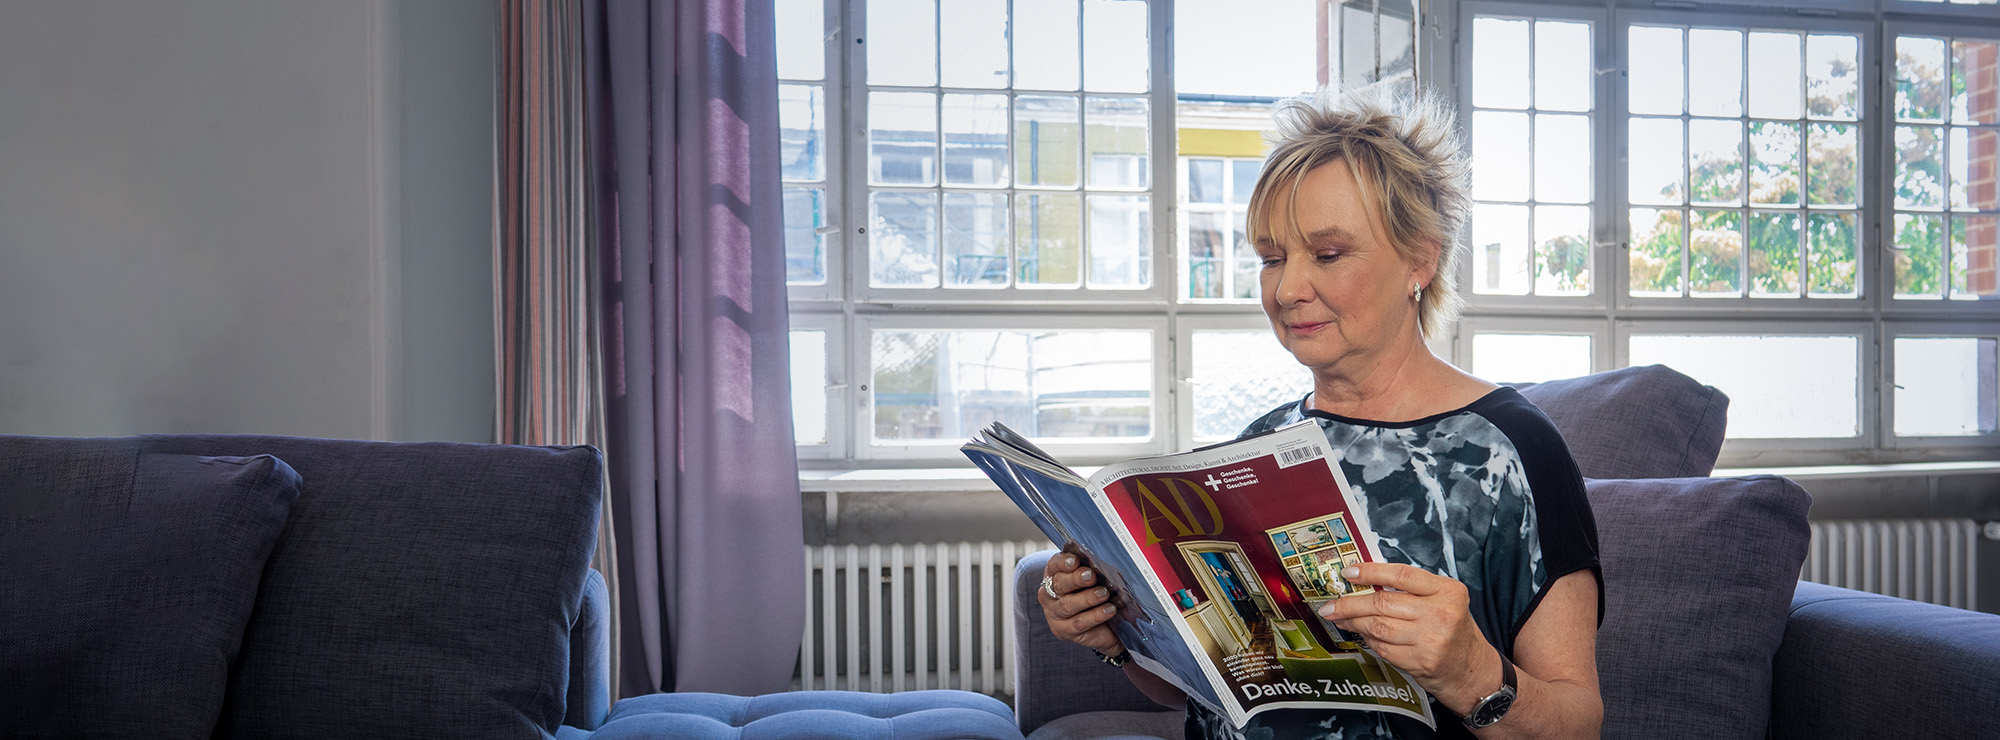 Sabine Schneider sitzt auf der Couch in einem Loft und liest ein Magazin